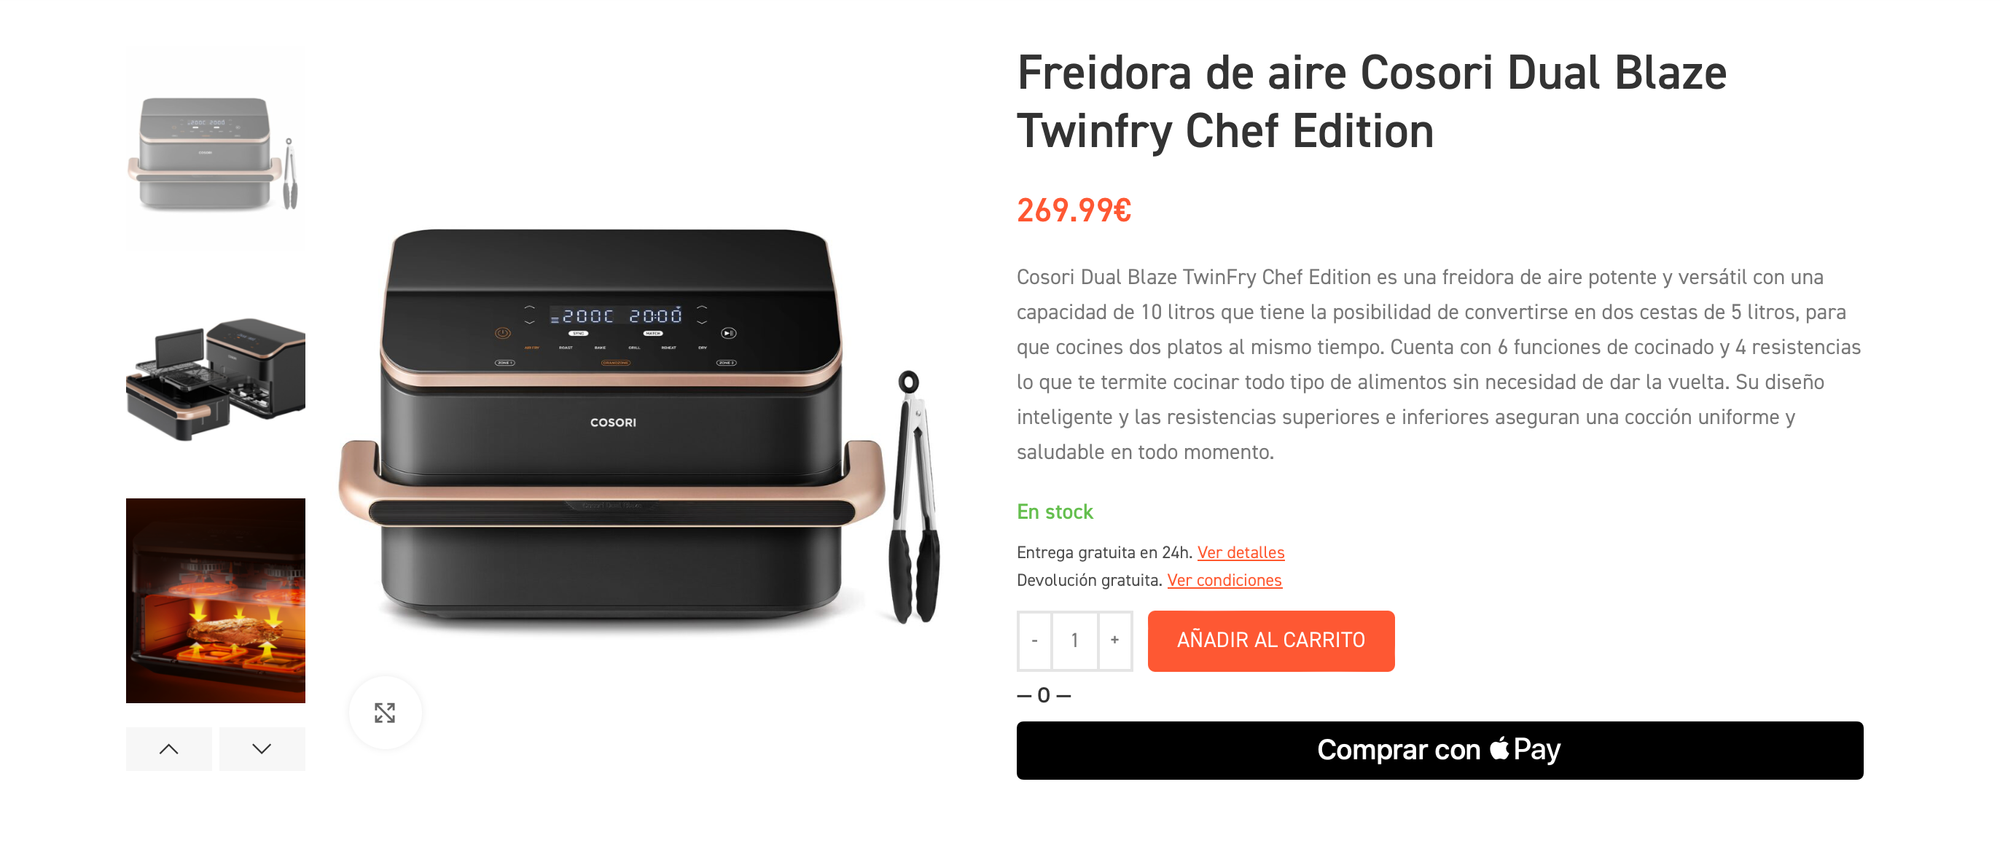 COSORI presenta Dual Blaze Twinfry Chef Edition, la única freidora de aire del mercado con cuatro resistencias para cocinar sin precalentar y dar la vuelta a los alimentos